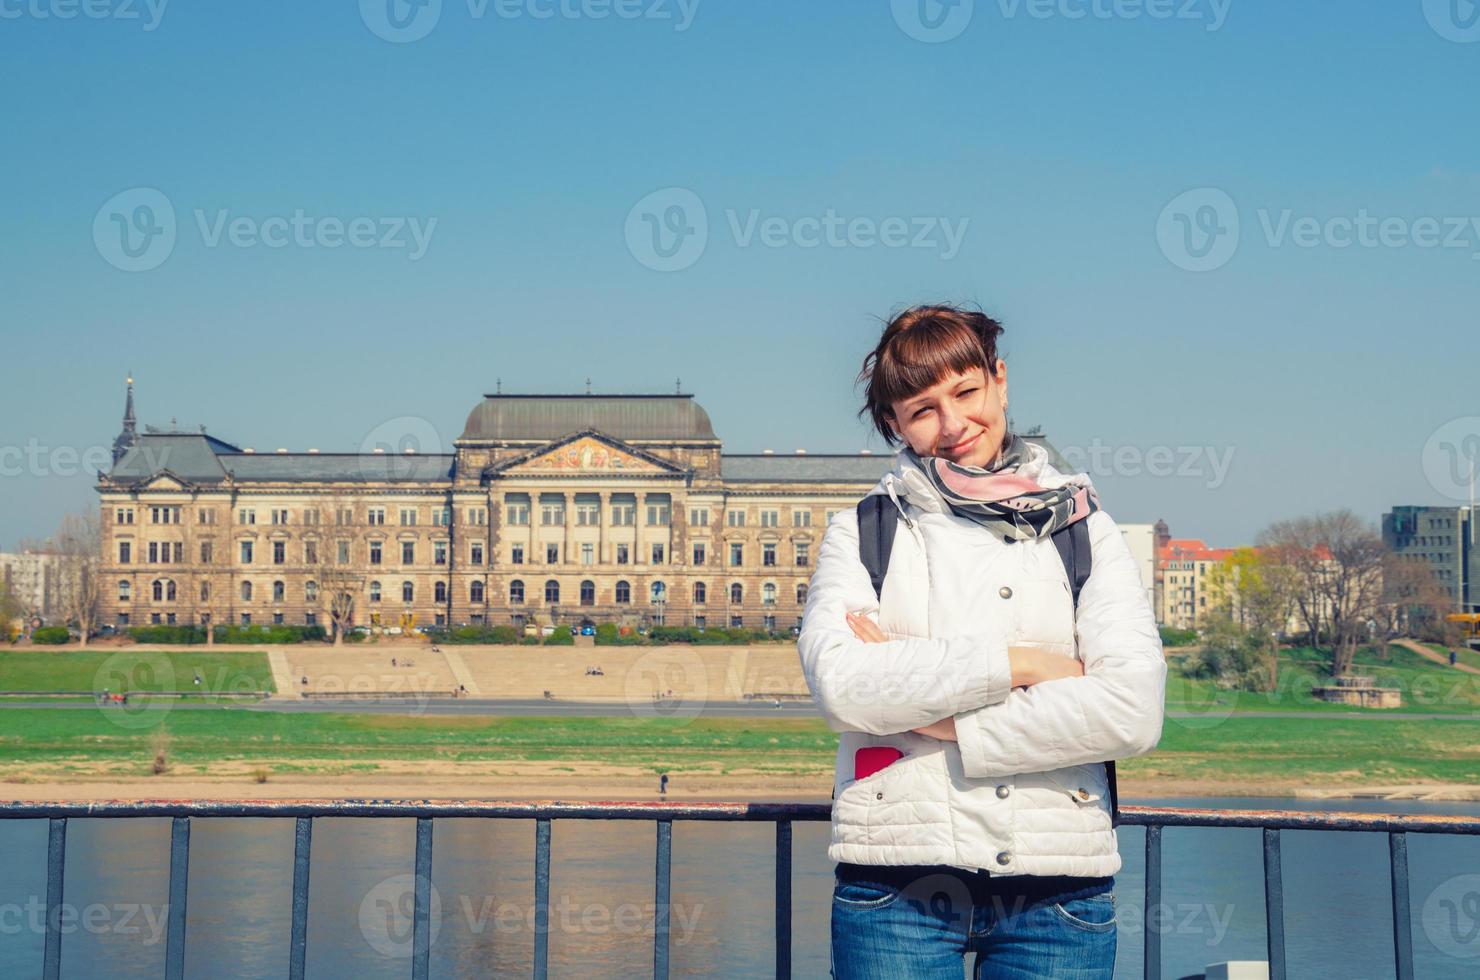 giovane ragazza viaggiatore con giacca bianca che guarda l'obbiettivo e sorriso, fiume Elba con vecchi edifici case nella città di Dresda foto